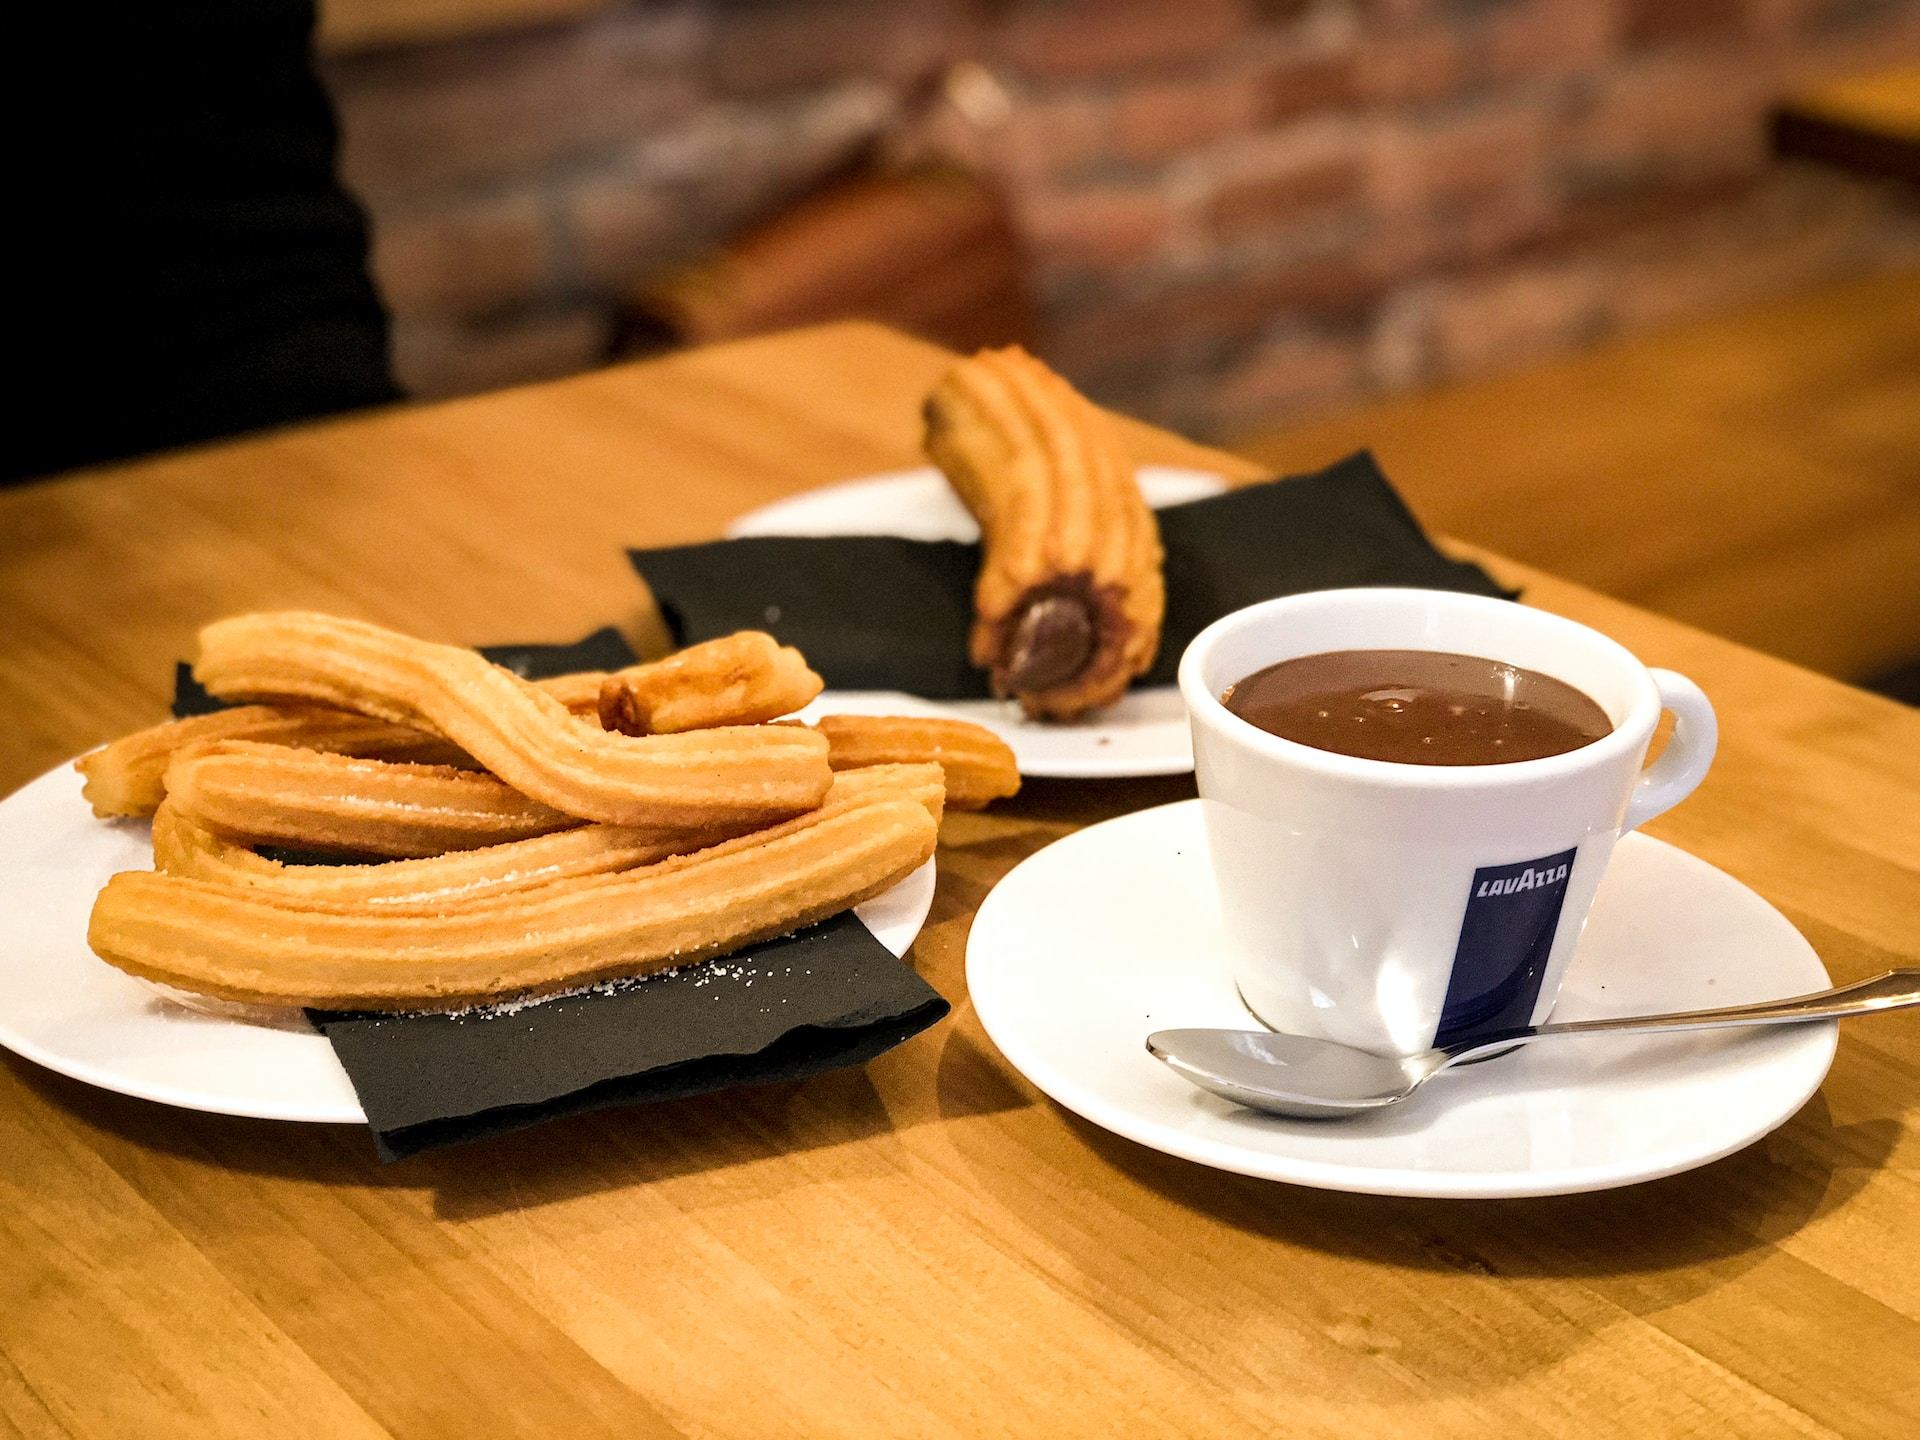 Les 3 cafeteries per prendre una deliciosa xocolata desfeta a Barcelona